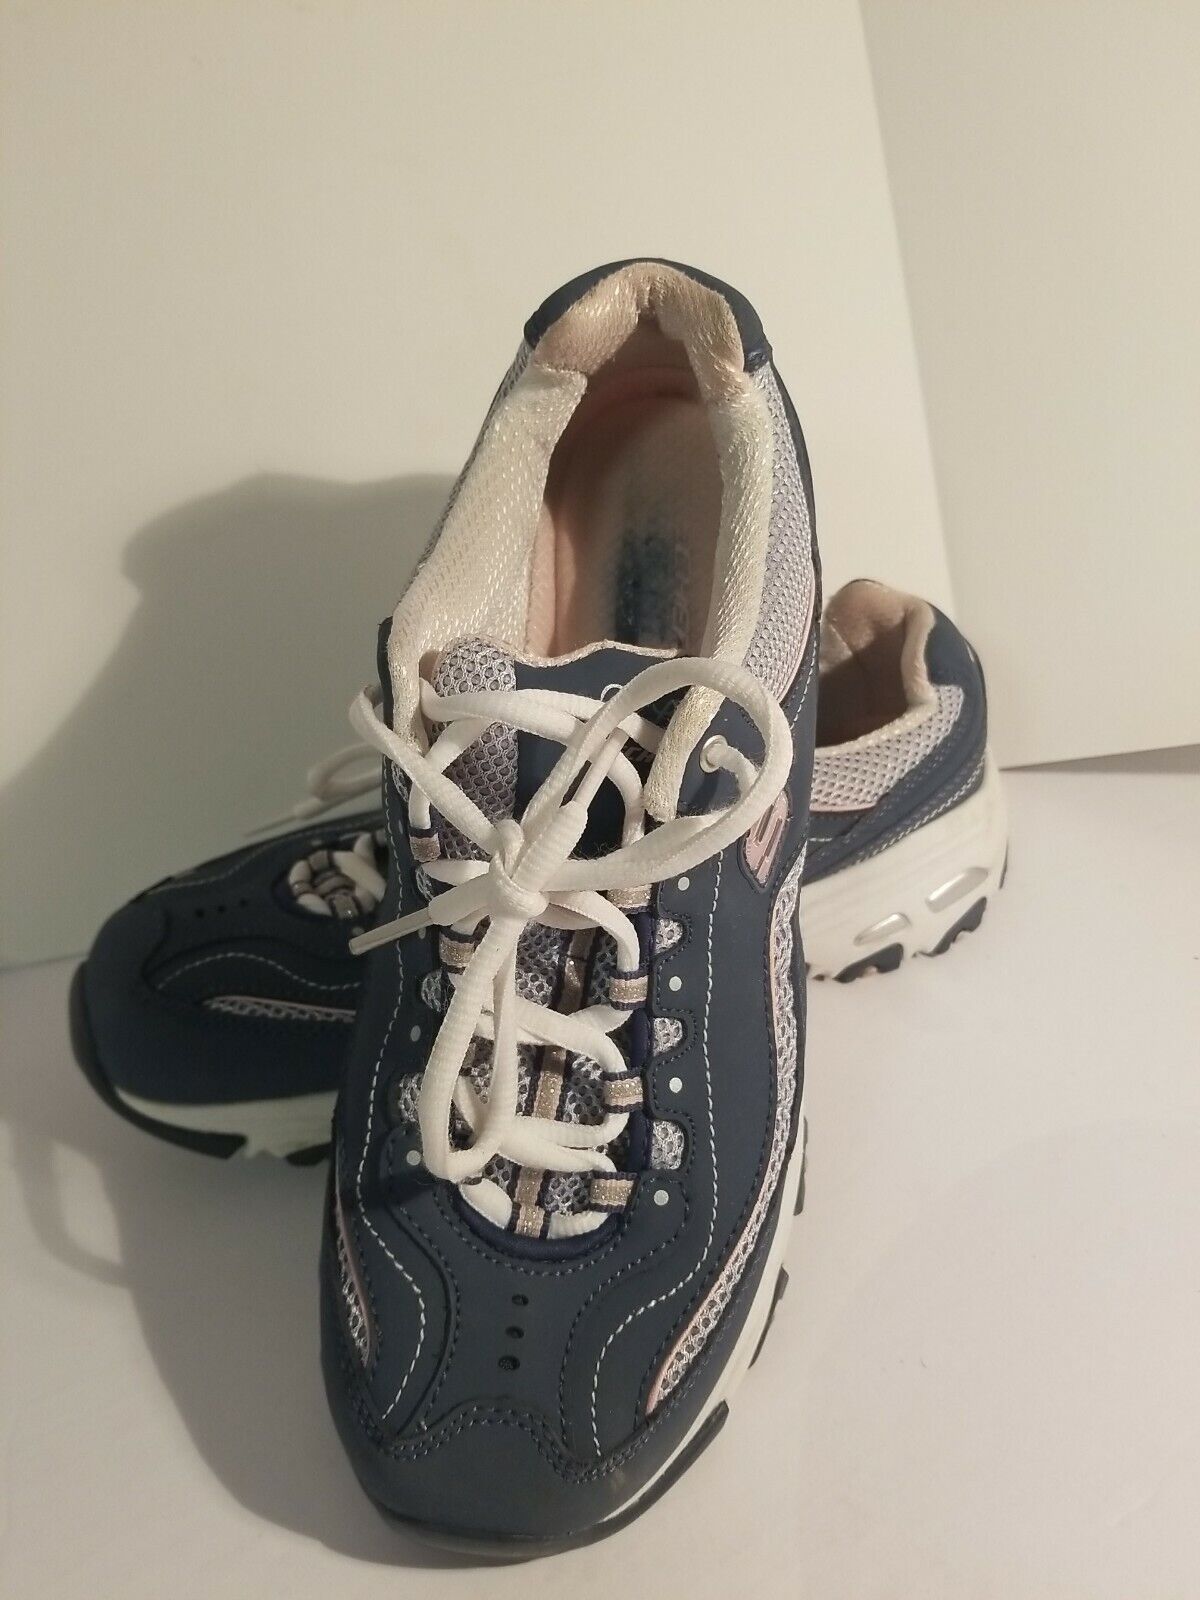 Skechers D'Lites Navy Blue Leather Sneakers Walki… - image 2